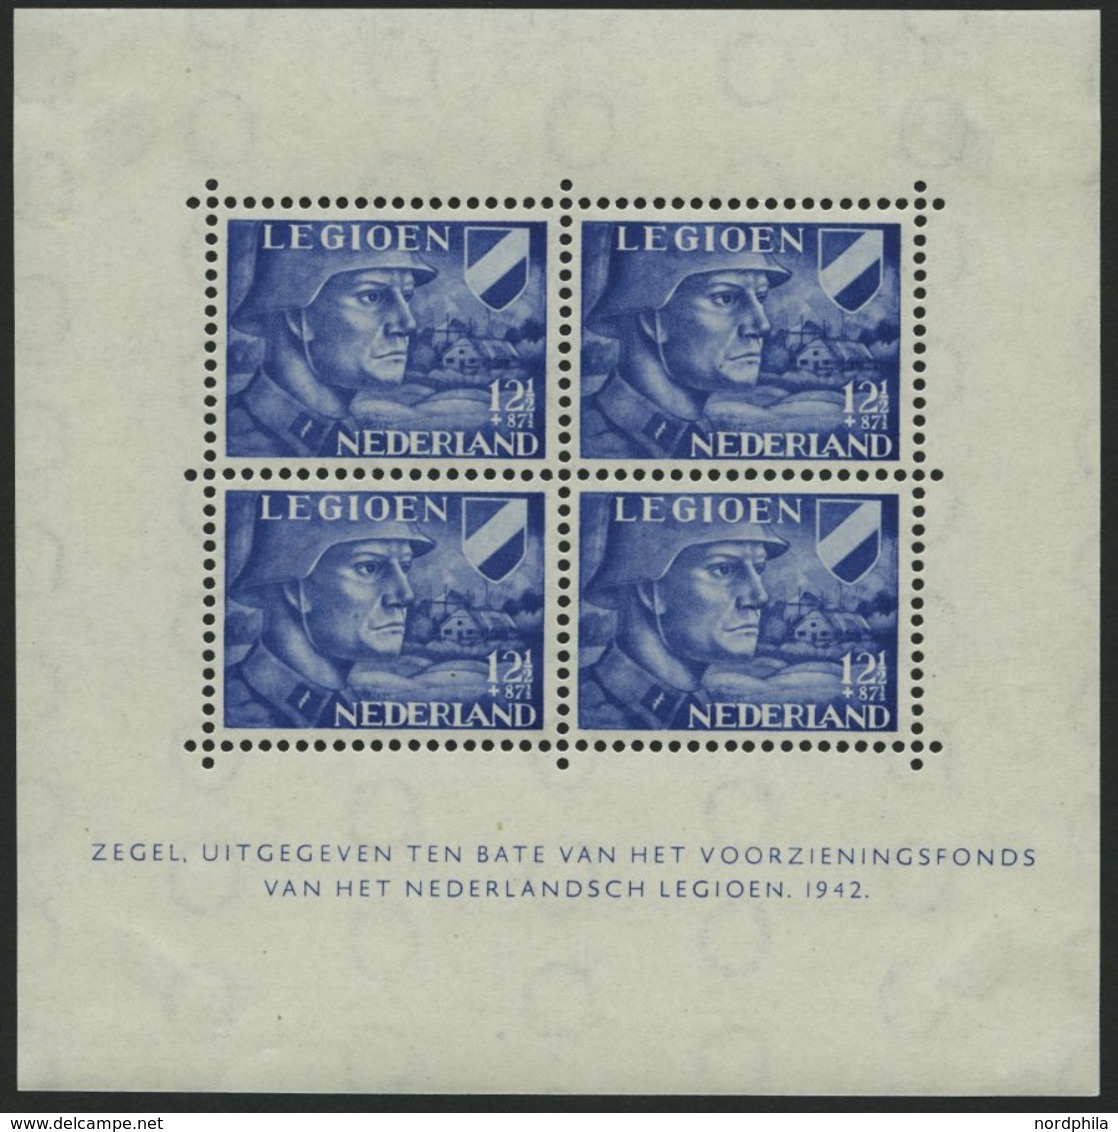 NIEDERLANDE Bl. 1/2 *, 1942, Blockpaar Legion, Marken Postfrisch, Falzreste Im Rand, Pracht - Usati